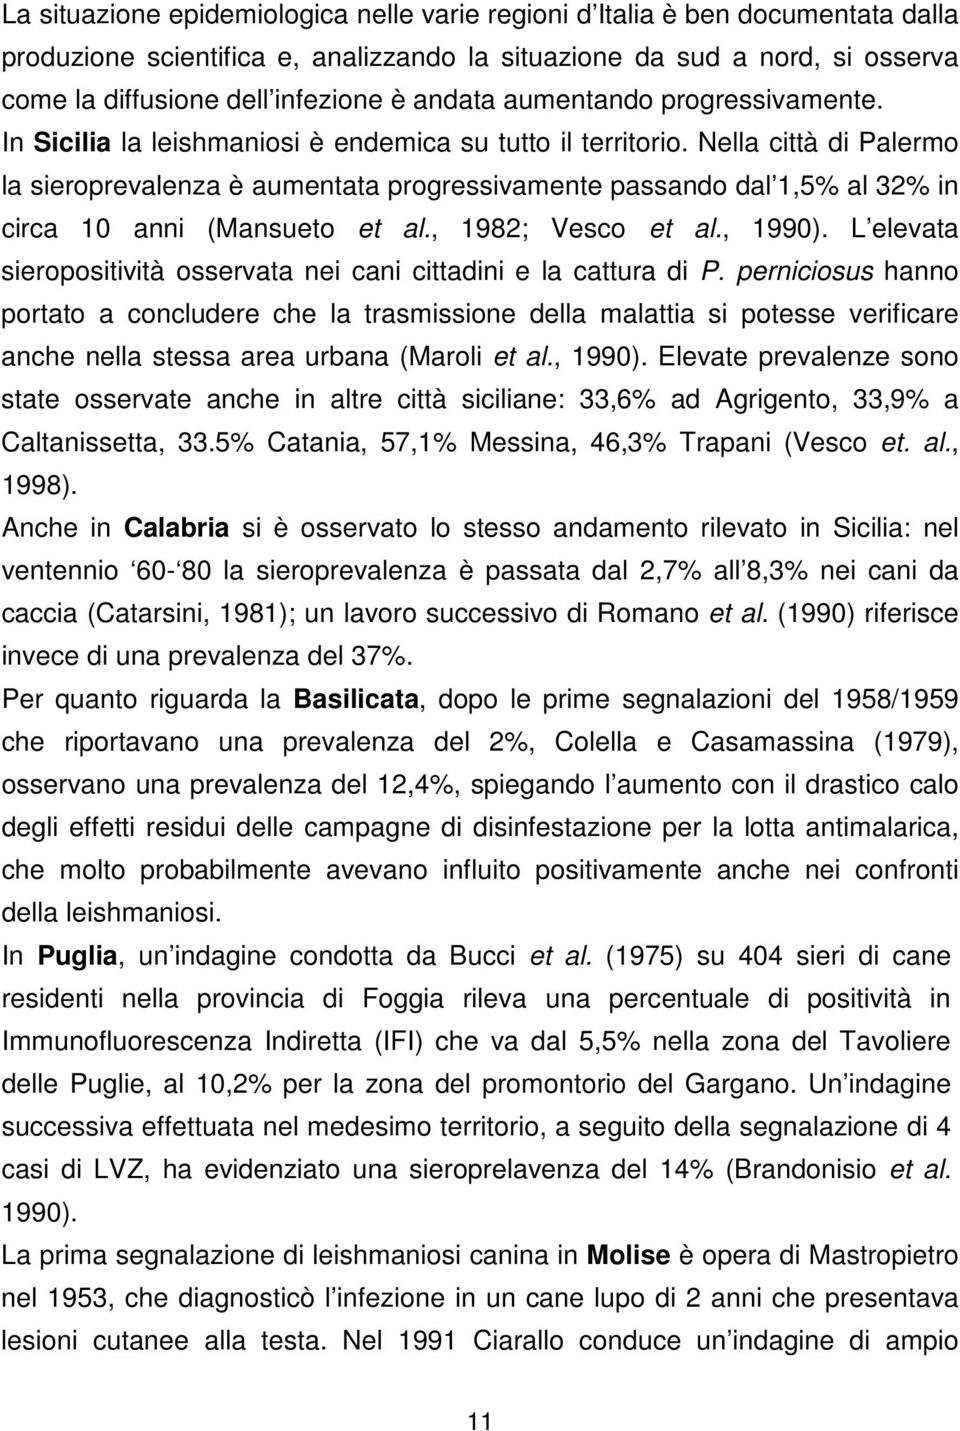 Nella città di Palermo la sieroprevalenza è aumentata progressivamente passando dal 1,5% al 32% in circa 10 anni (Mansueto et al., 1982; Vesco et al., 1990).